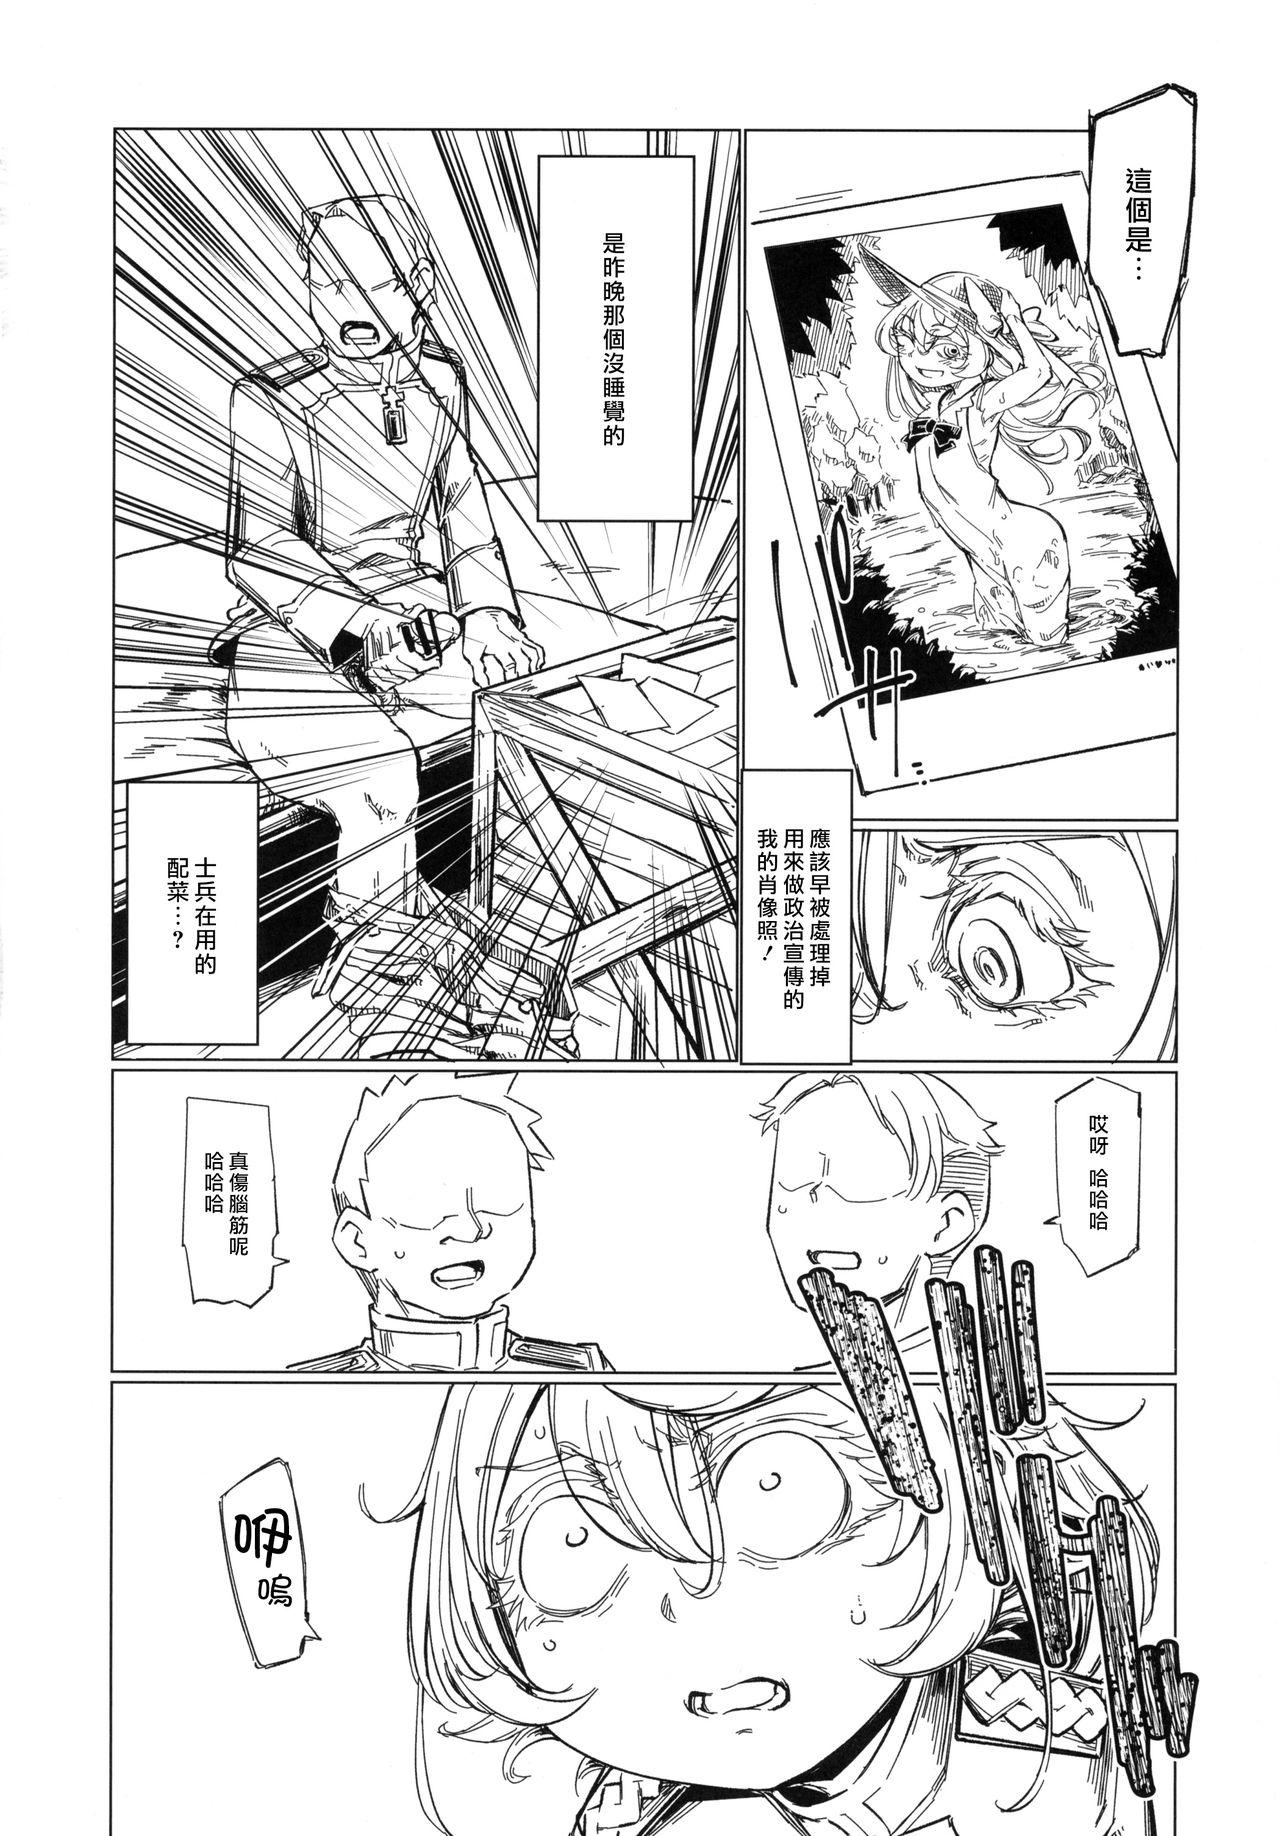 Facials Saizensen no Degrechaf Ojisan - Youjo senki Blow - Page 9